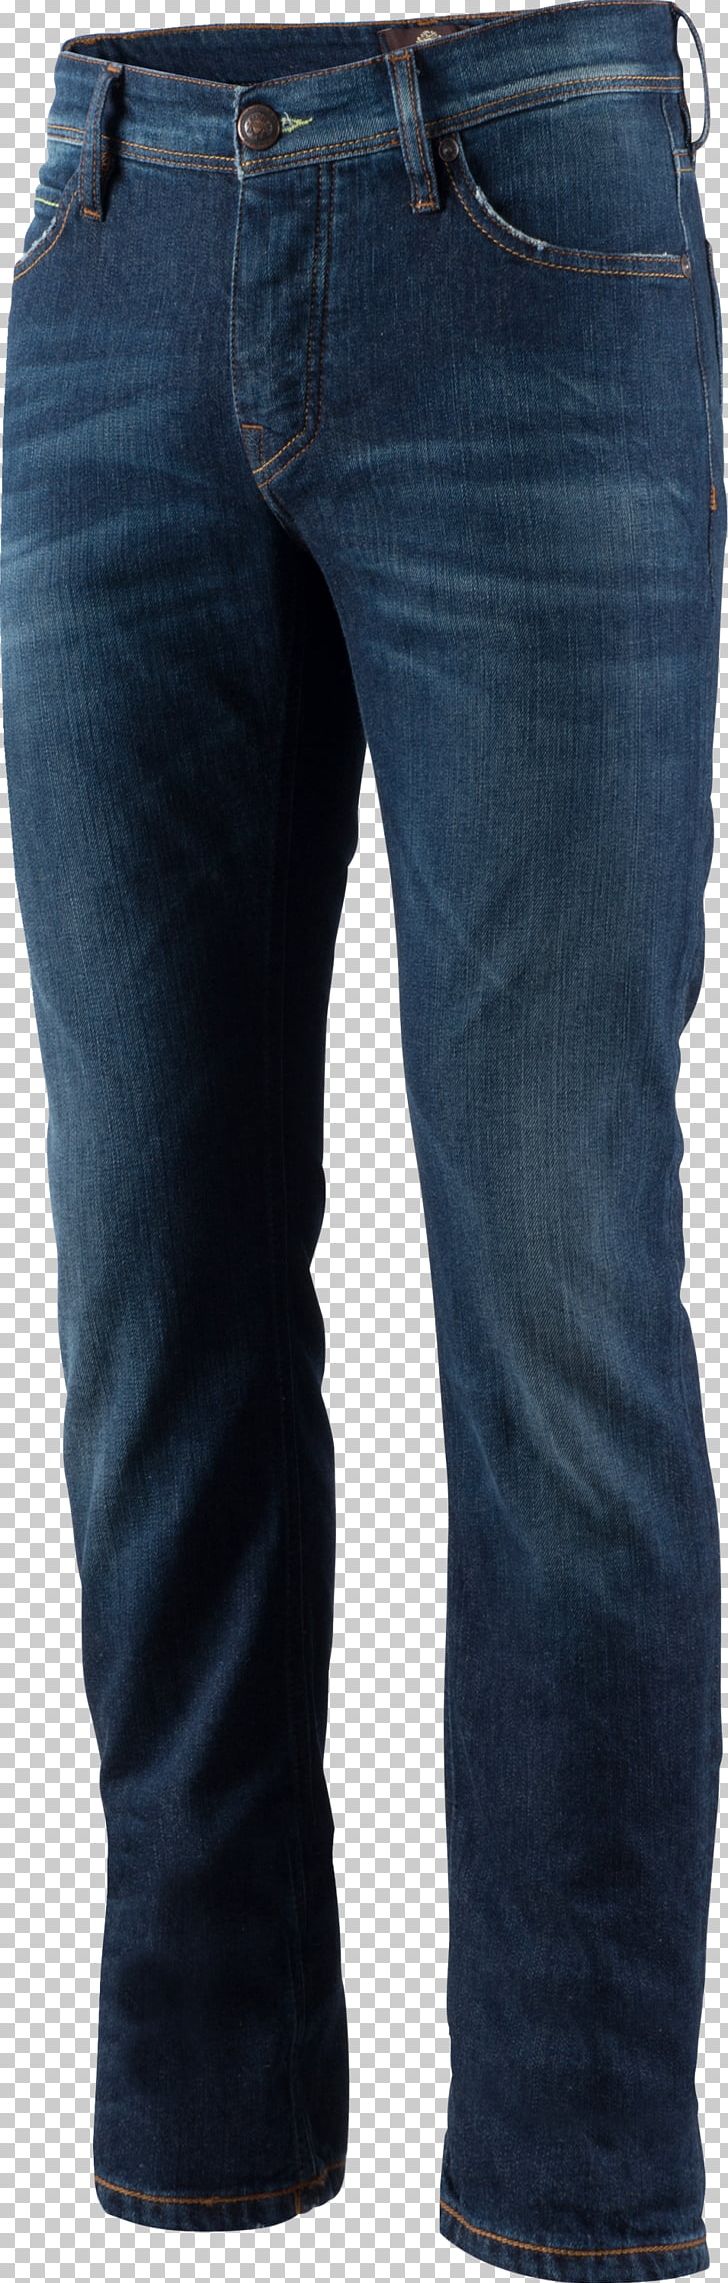 Jeans Denim Pocket Pants Cobalt Blue PNG, Clipart, Blue, Clothing, Cobalt, Cobalt Blue, Denim Free PNG Download